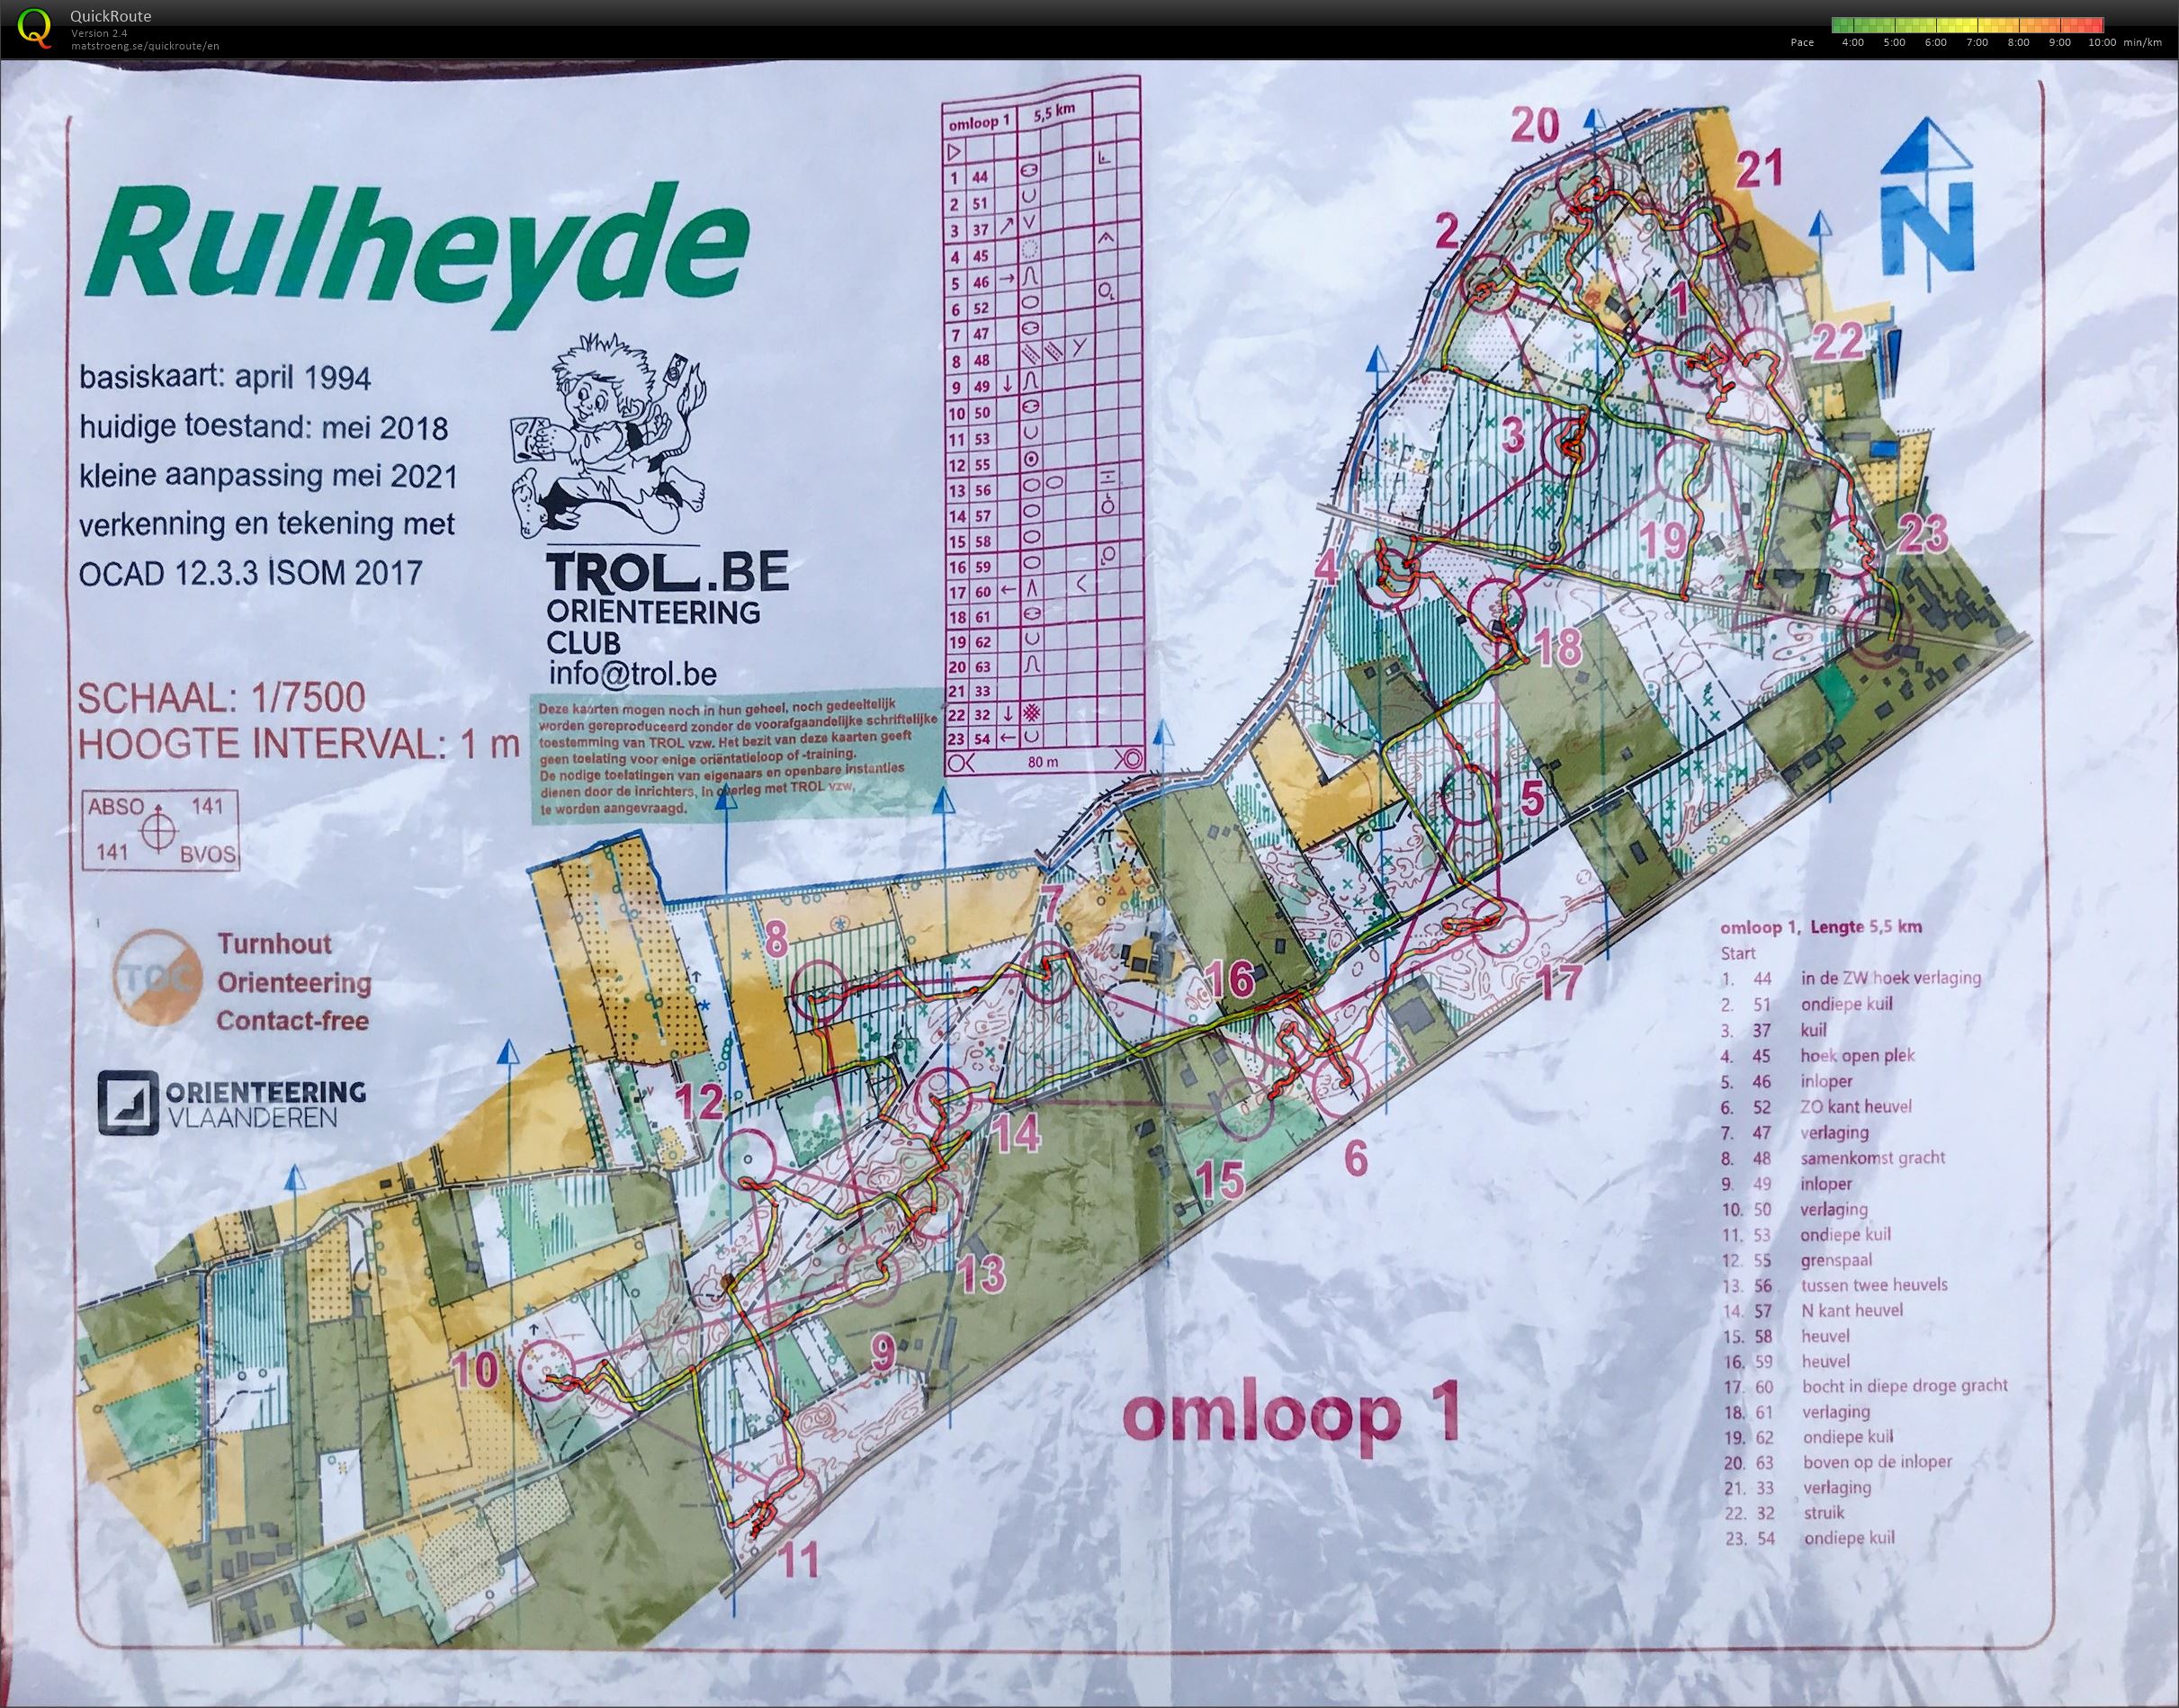 Rulheyde (2021-06-05)